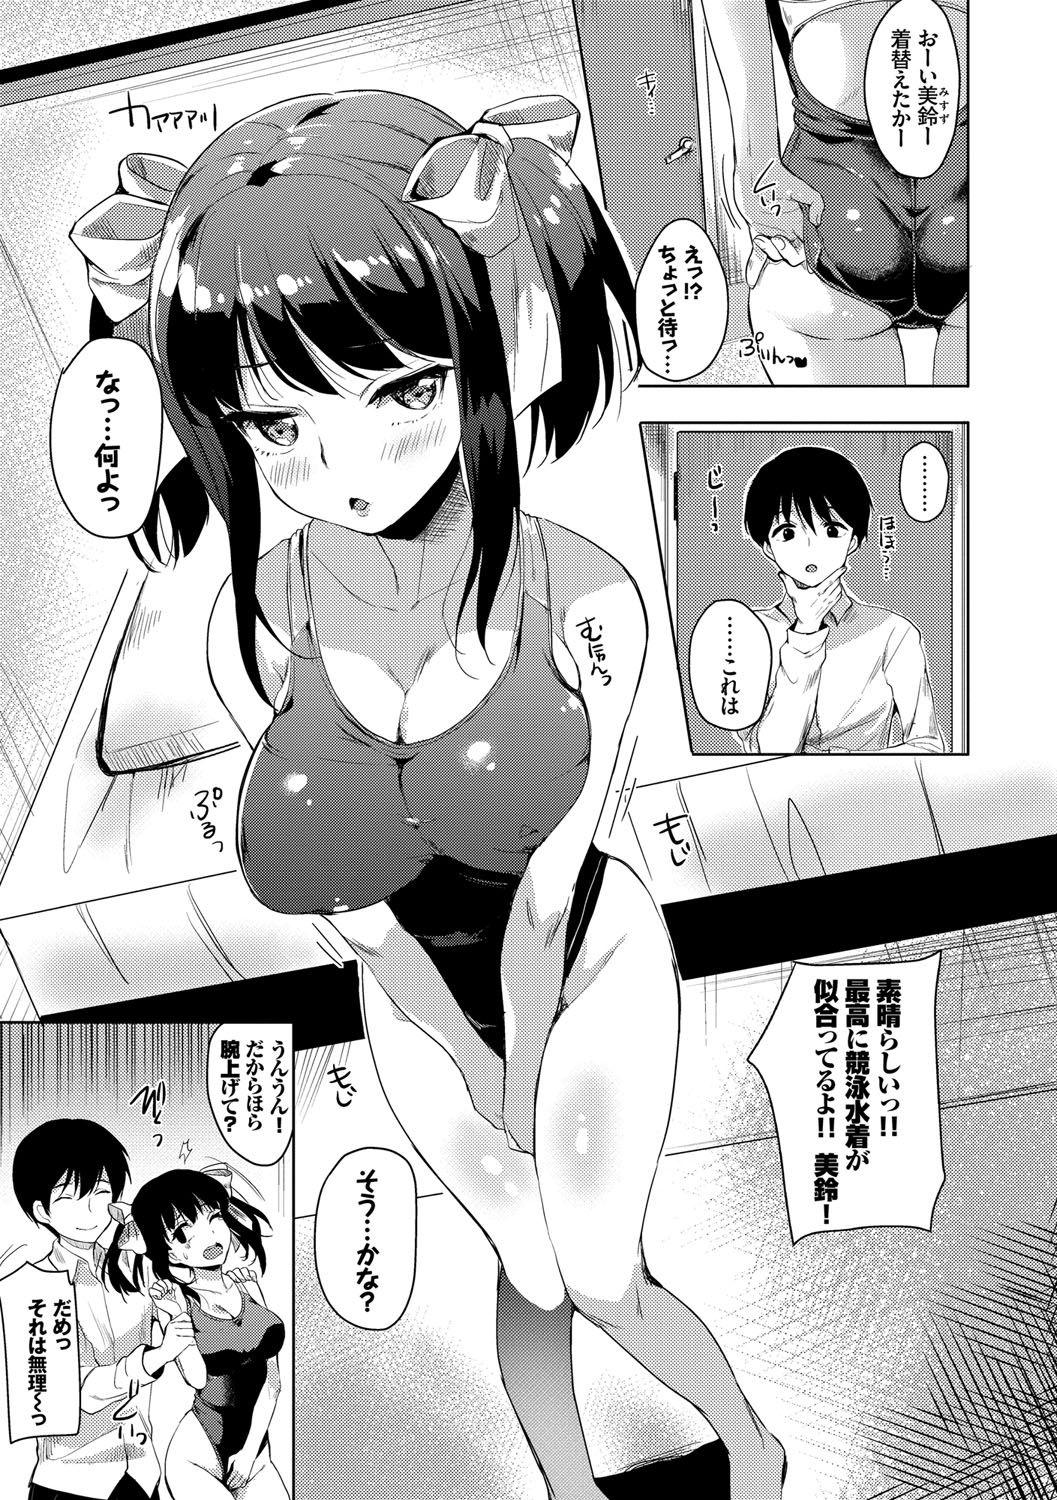 Hardcore Koakuma Switch - Little Diabolic Girl Switch Fat Ass - Page 8